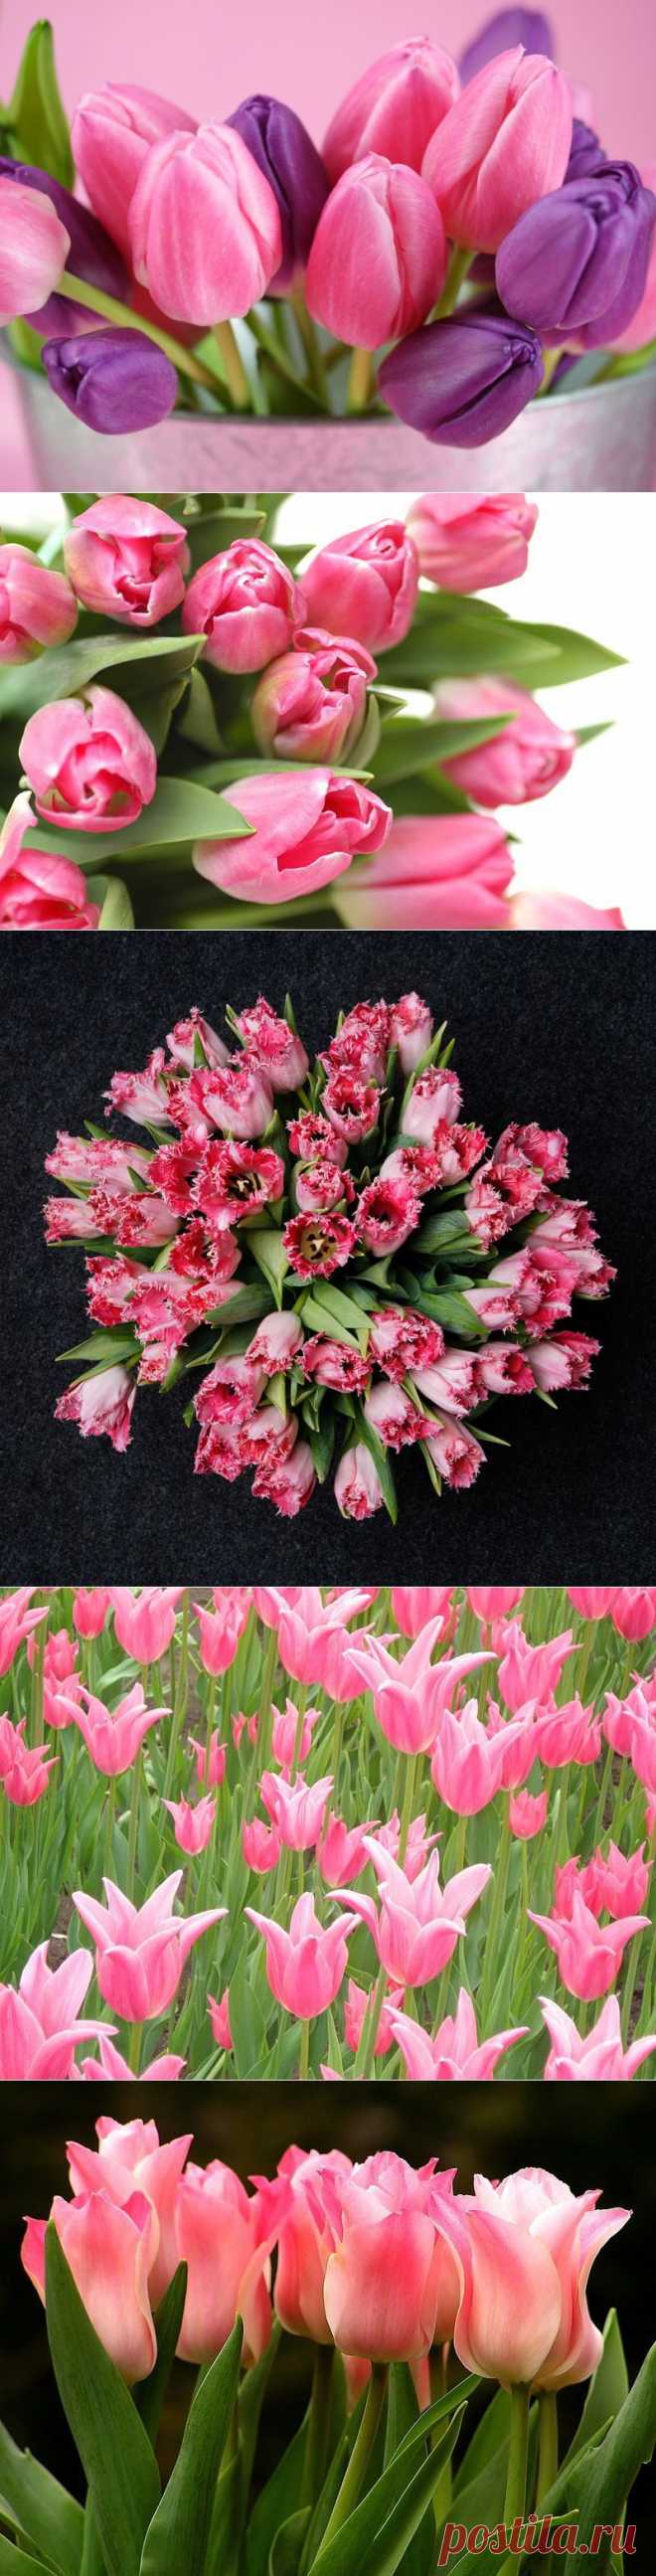 Розовые тюльпаны | Удивительное и смешное в картинках